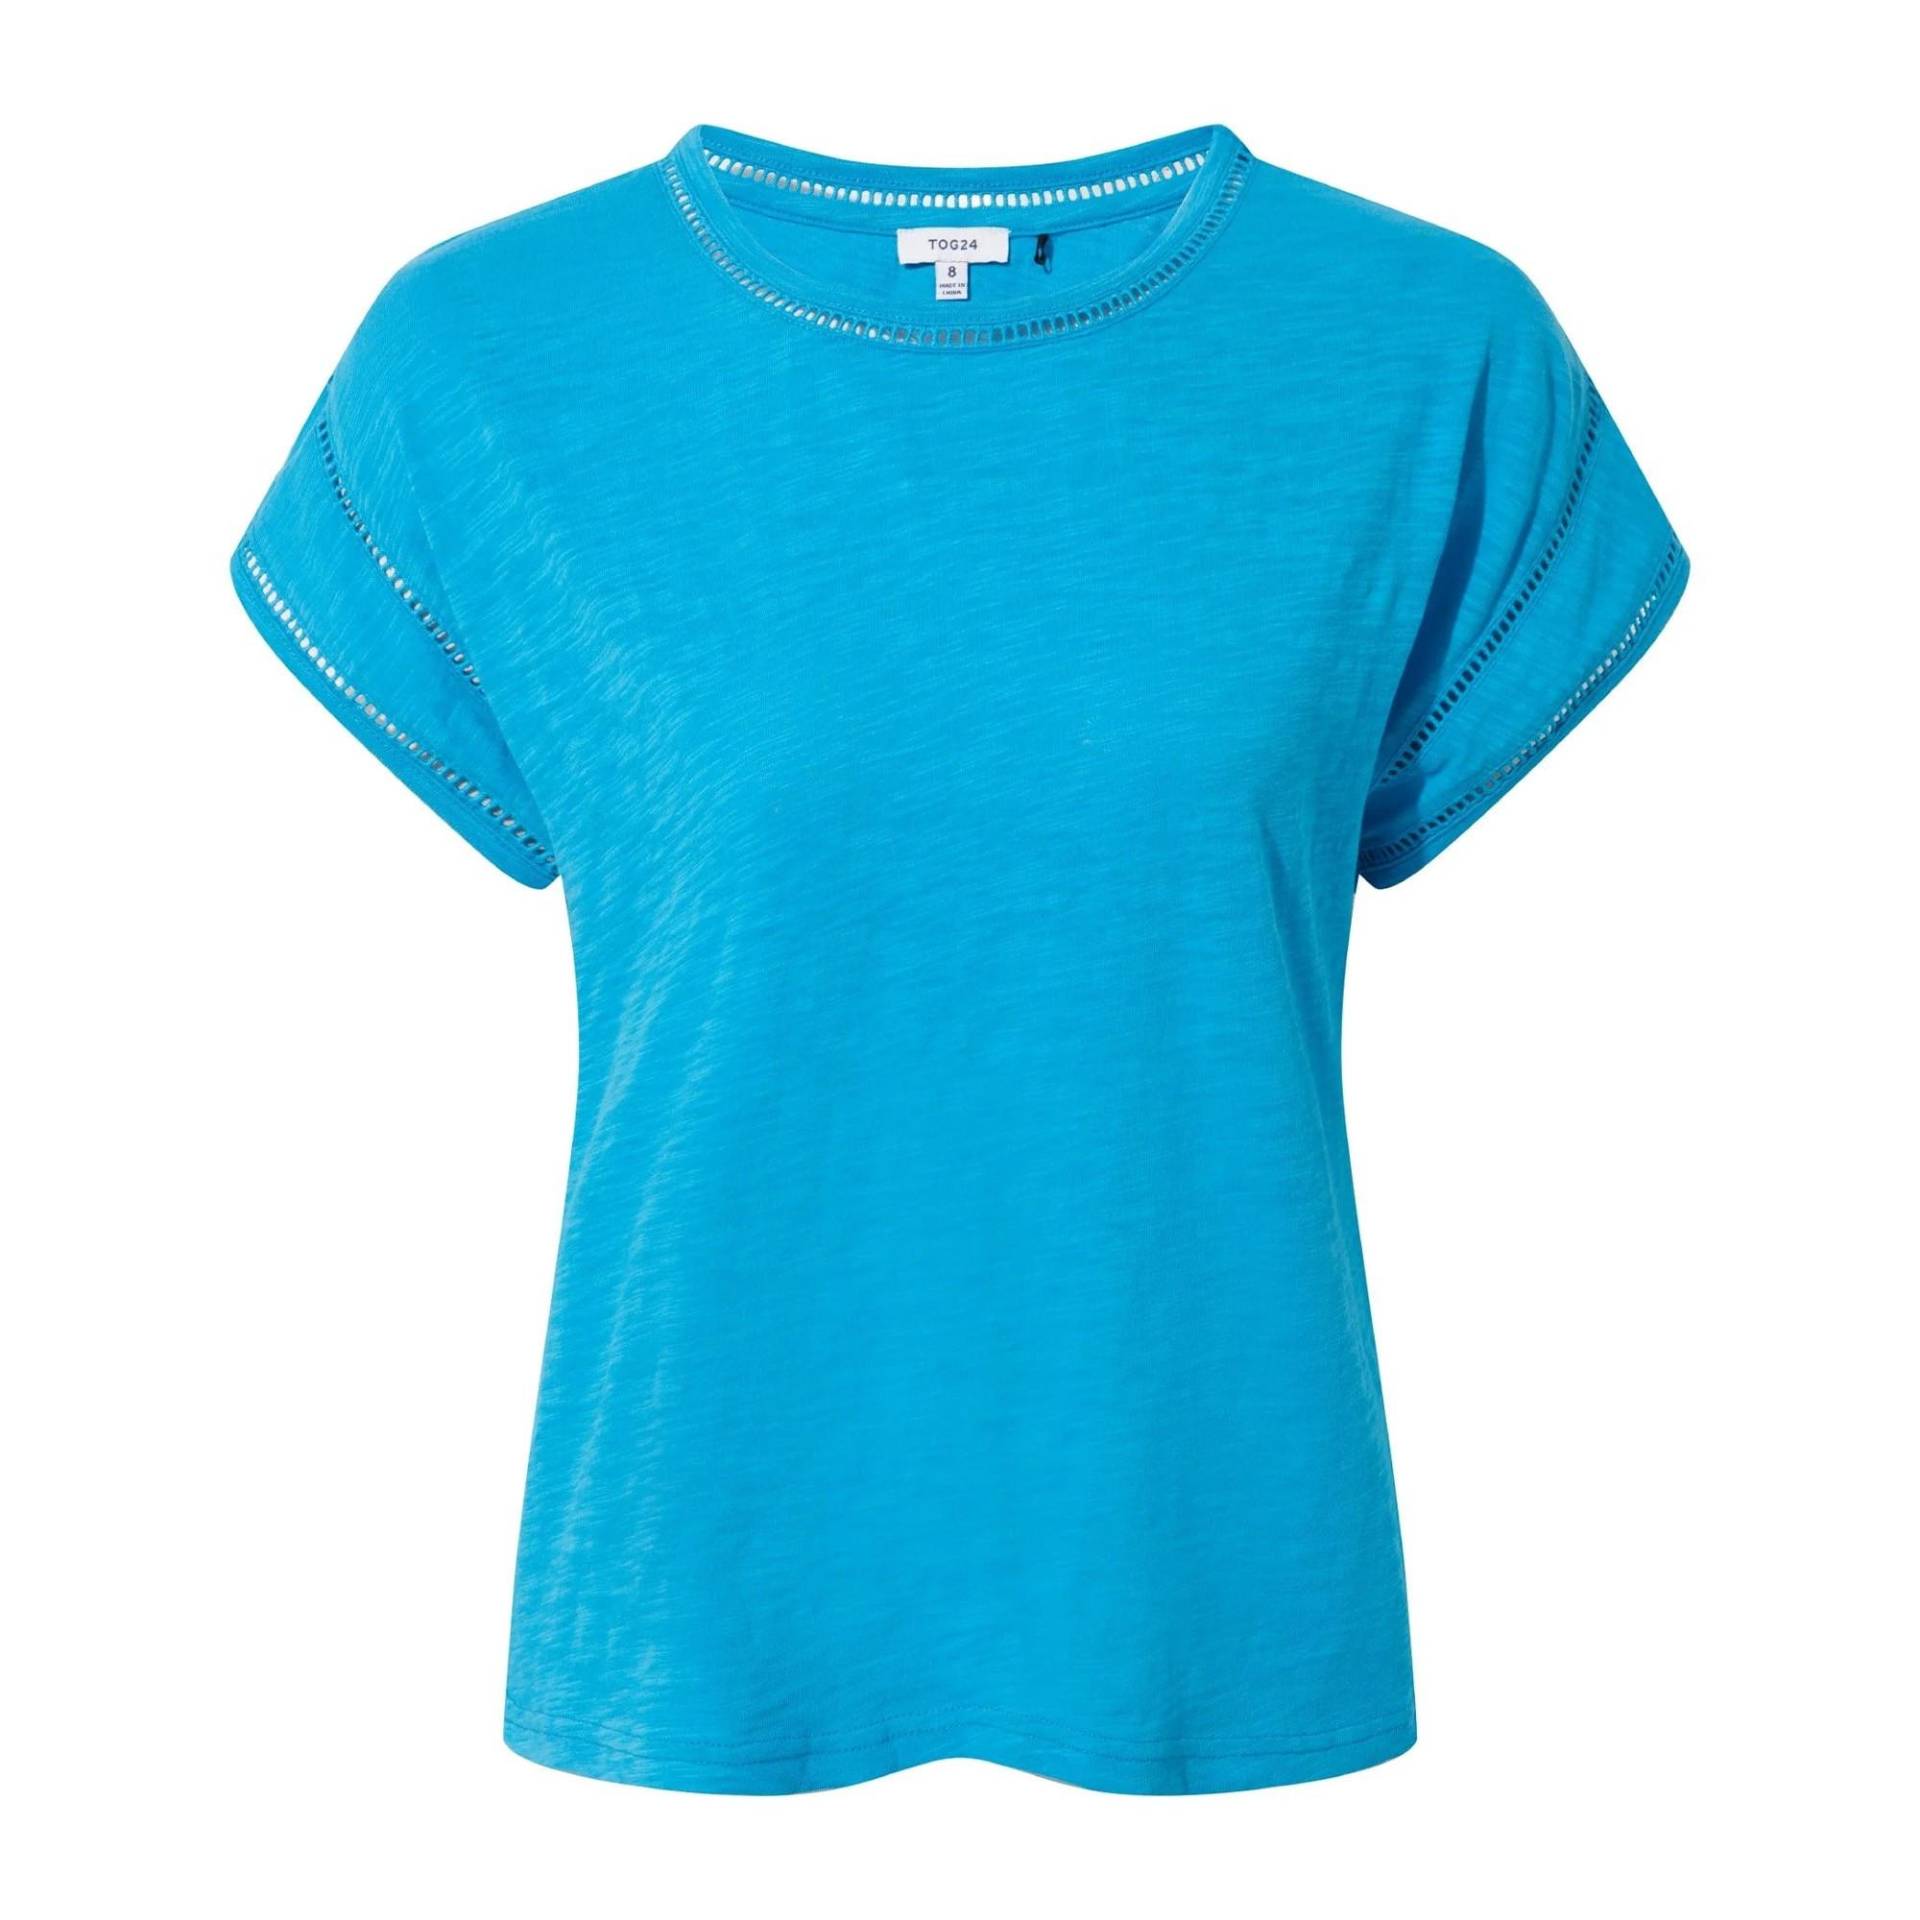 Andrea Tshirt Damen Blau 36 von Tog24